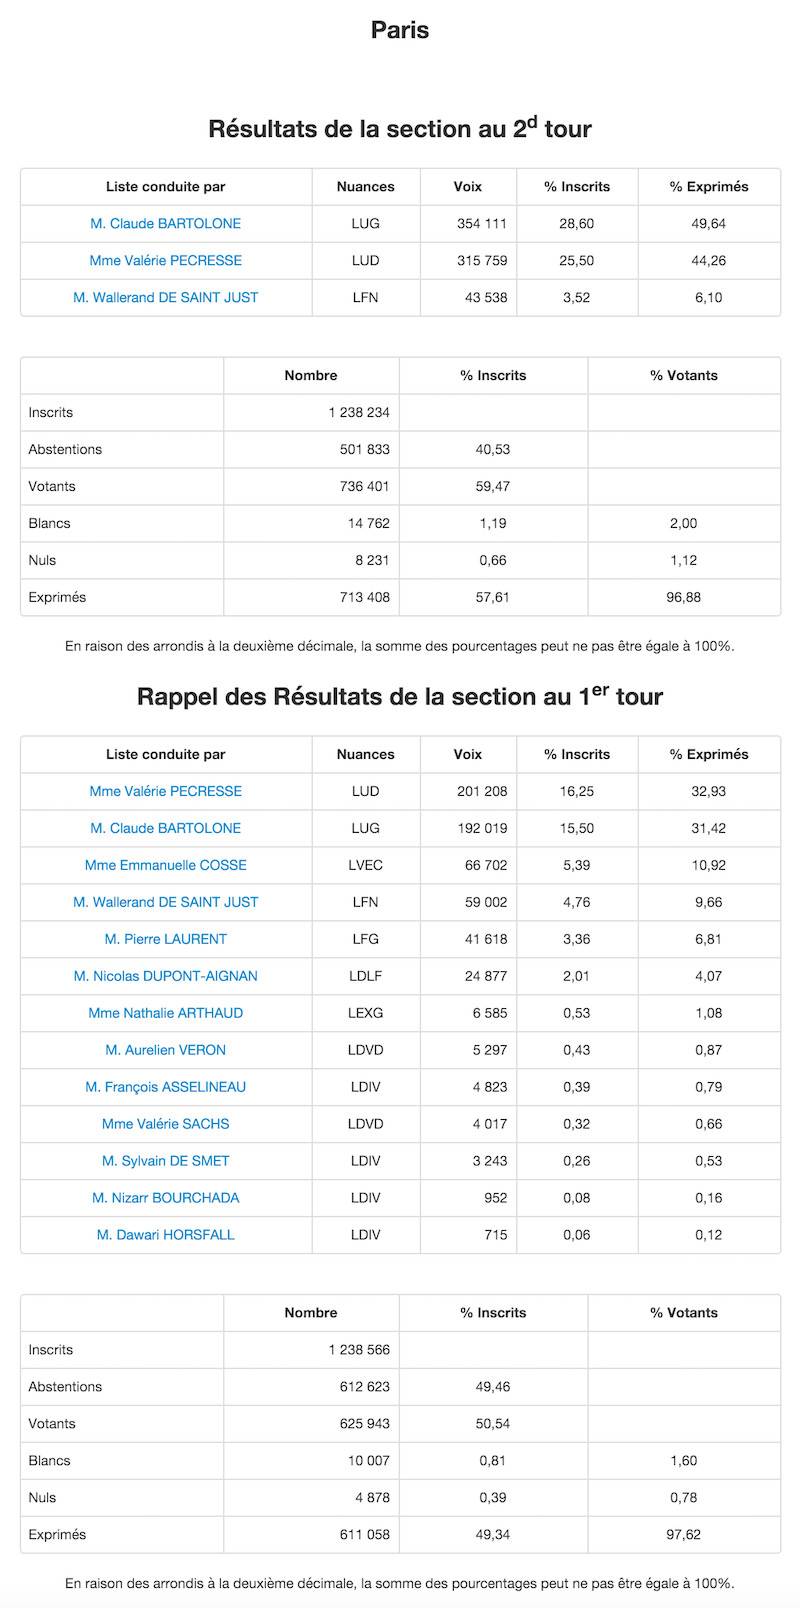 Régionales 2015 et 2010 dans le 5e arrondissement de Paris